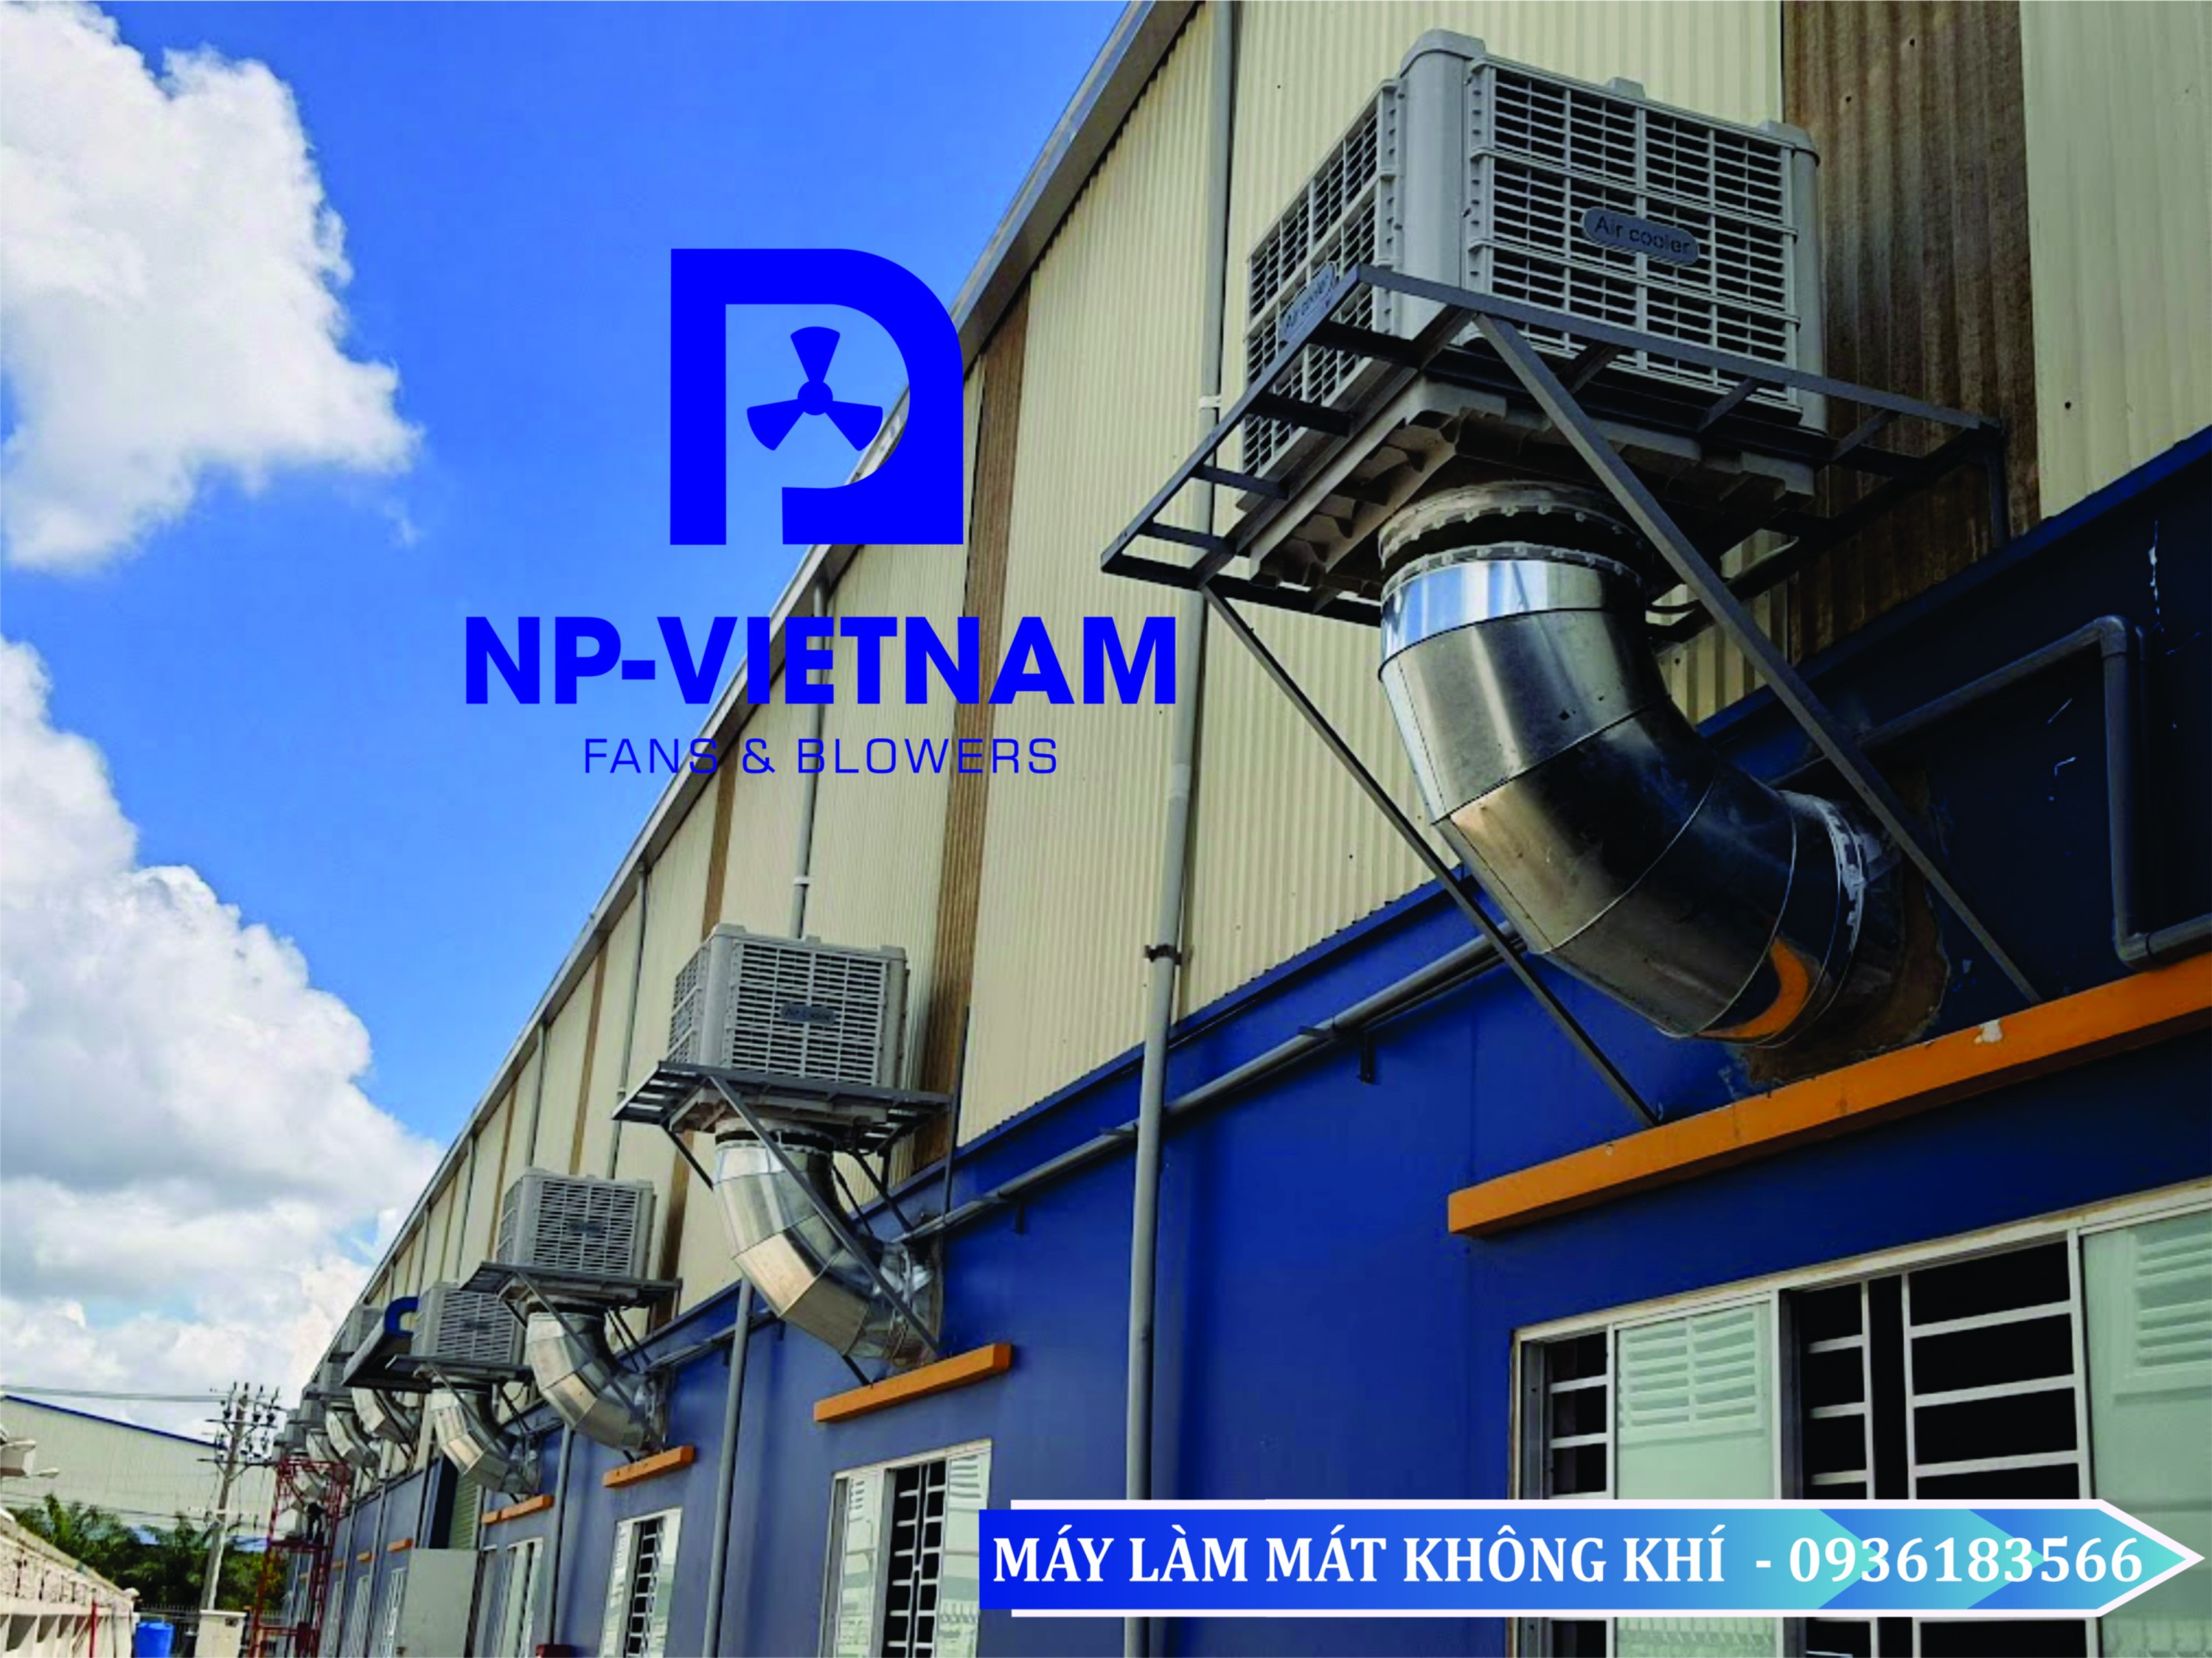 NAKO HN22L là một trong những sản phẩm làm mát tiên tiến nhất của NAKO. Với công suất làm mát hàng đầu, thiết kế hiện đại và tính năng an toàn cao, NAKO HN22L được đánh giá là một trong những sự lựa chọn tốt nhất để giải quyết các vấn đề về nhiệt độ trong các nhà máy hoặc xưởng sản xuất.